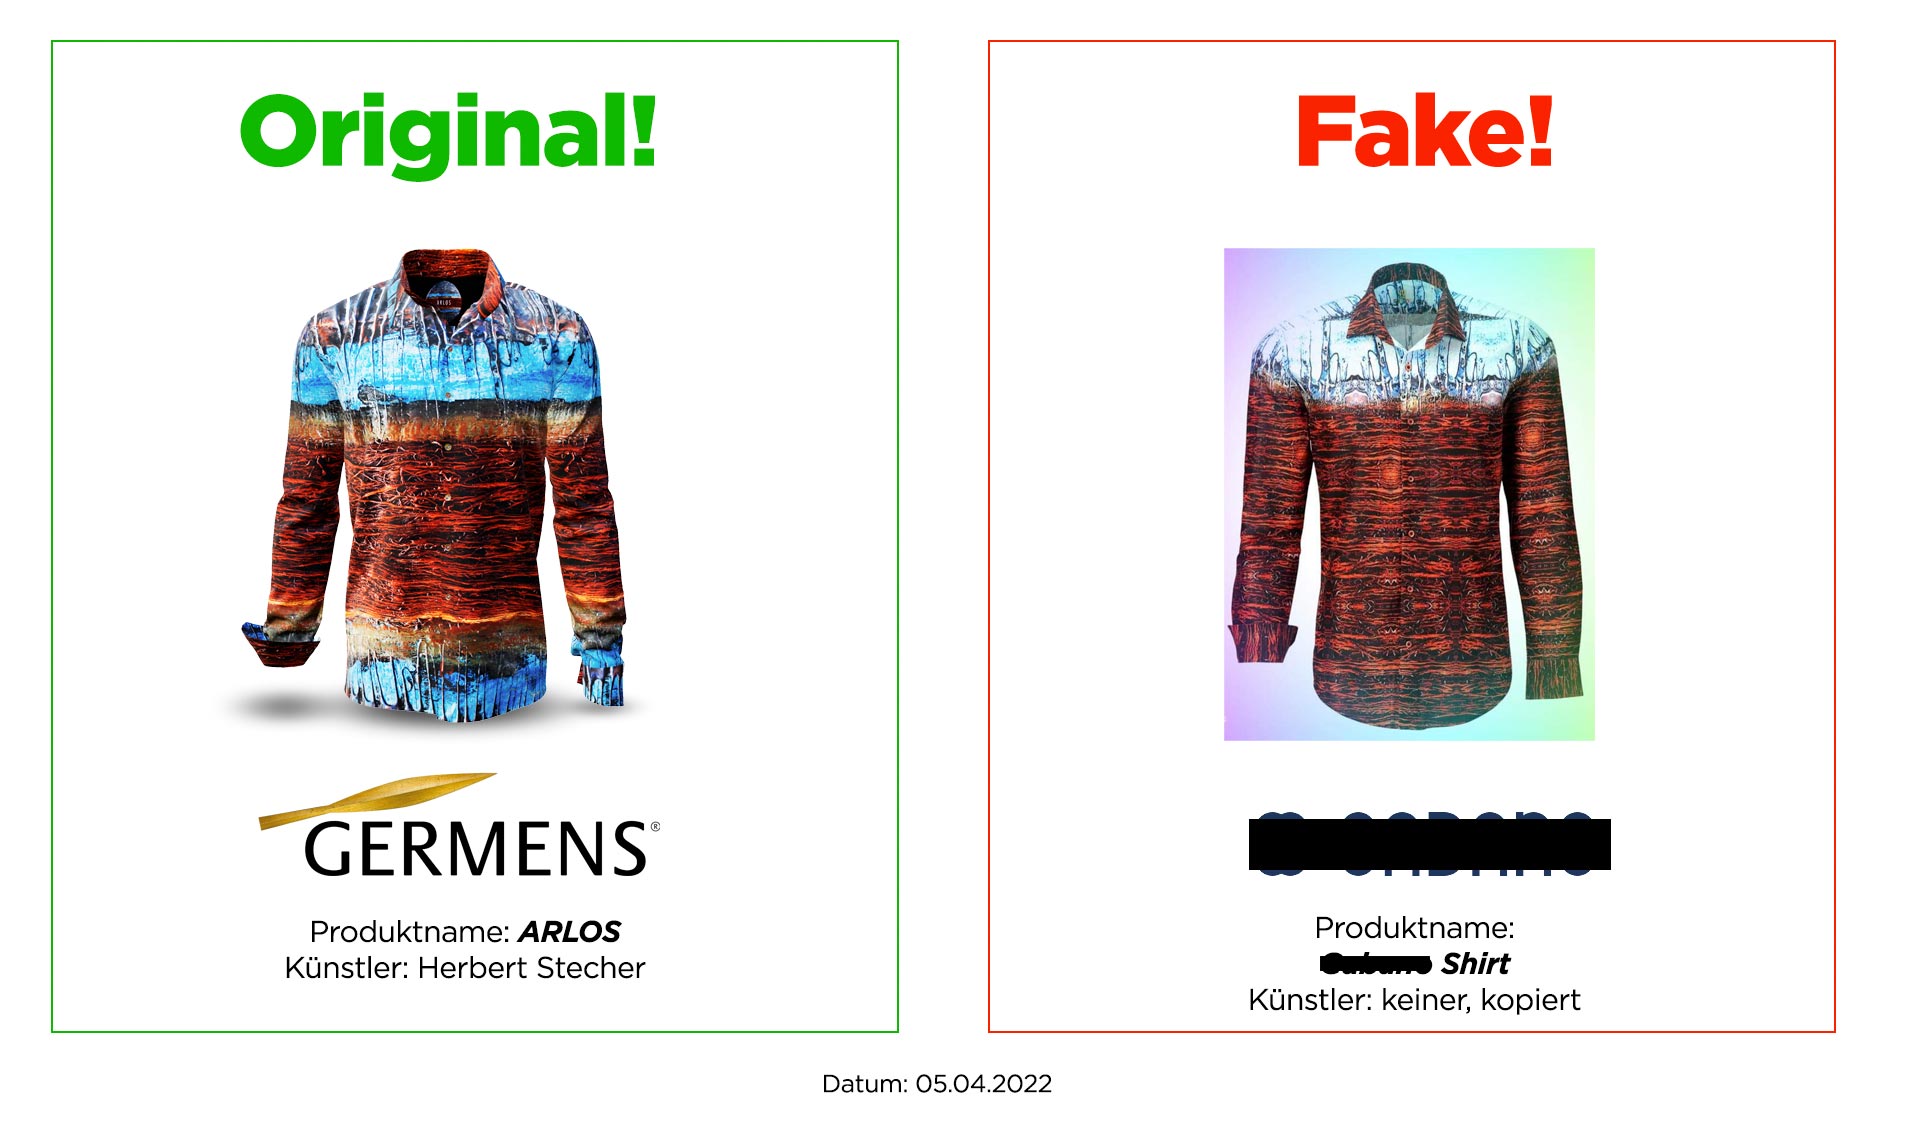 Original GERMENS® shirt ARLOS and plagiarism